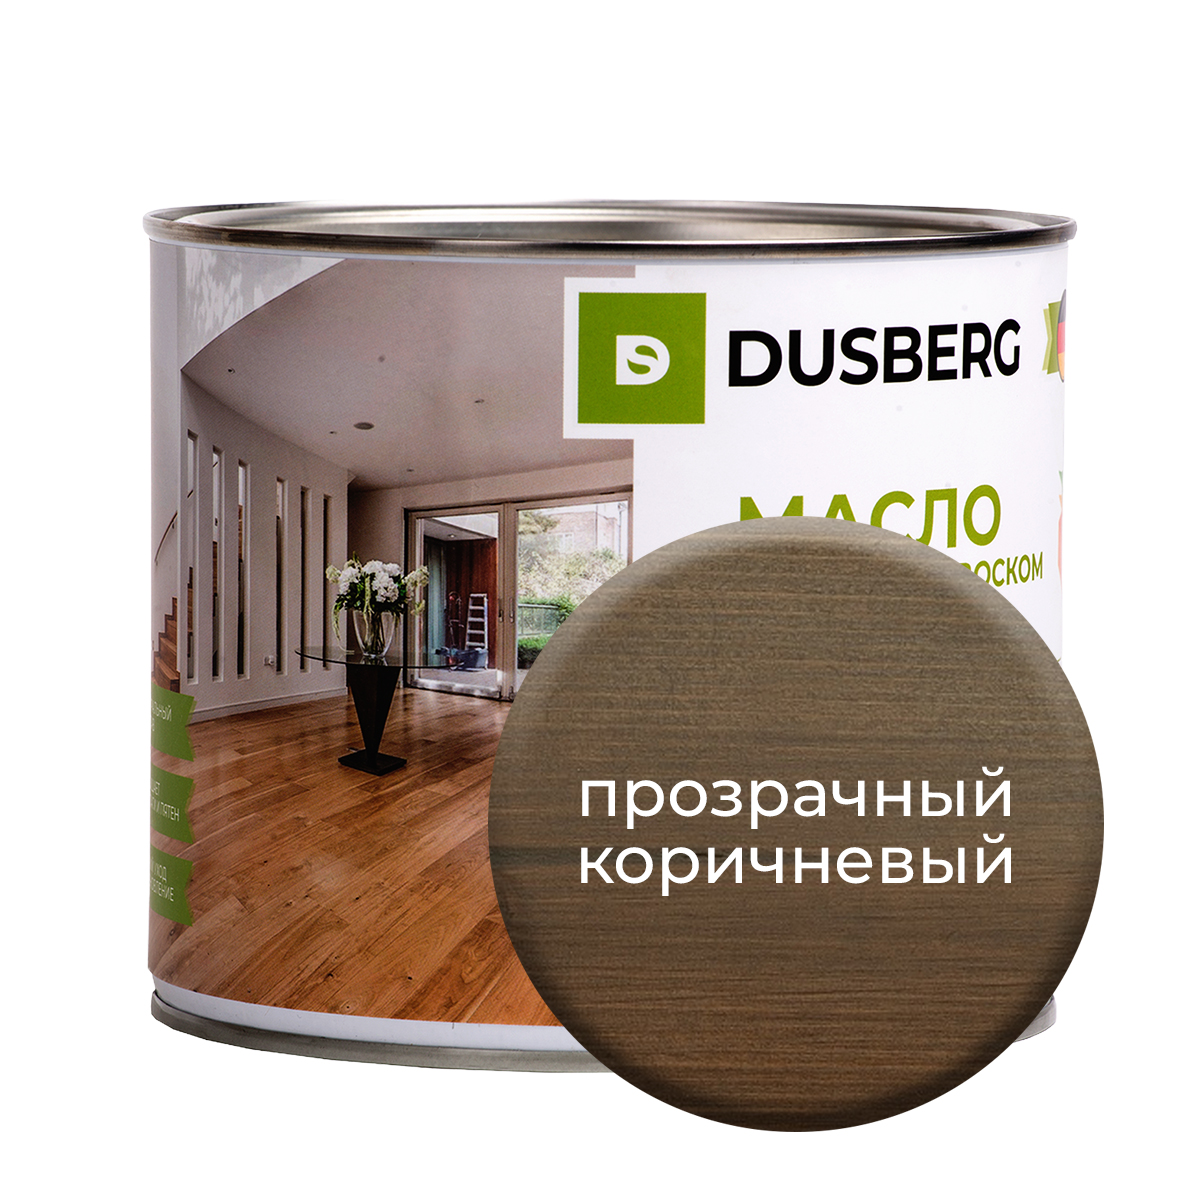 Масло Dusberg с твердым воском на бесцветной основе, 2 л Прозрачно-коричневый масло dusberg с твердым воском на бес ной основе 2 л